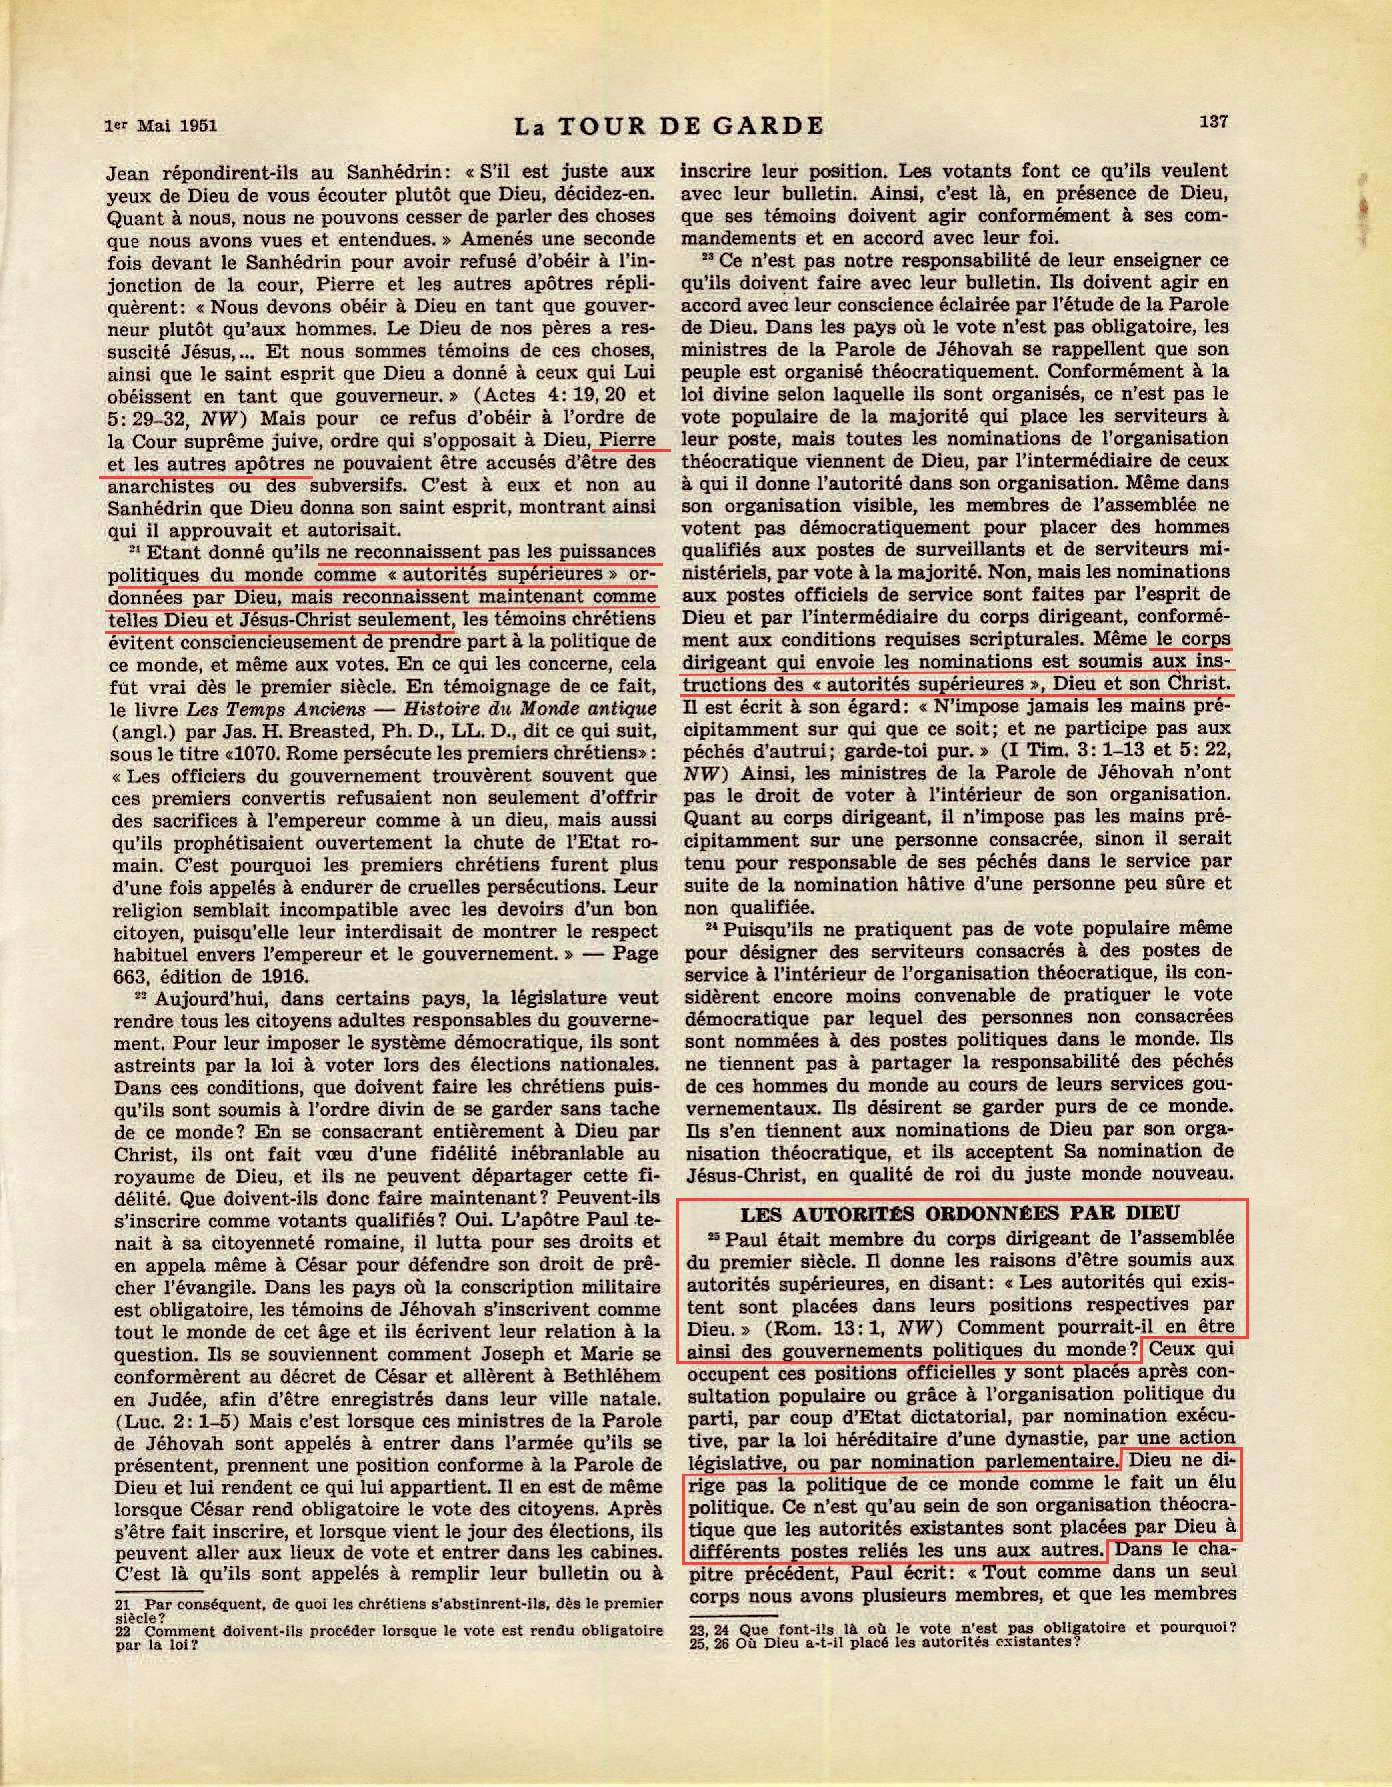 Les autorités supérieures  - Page 2 La-Tour-de-Garde-1-mai-1951-p137